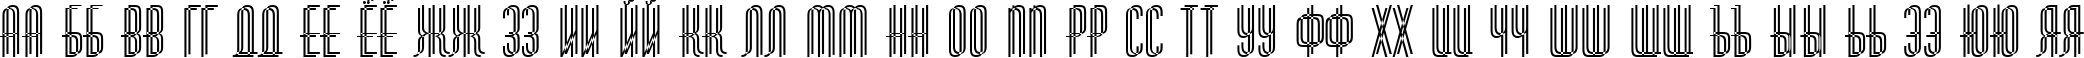 Пример написания русского алфавита шрифтом a_HuxleyDbl